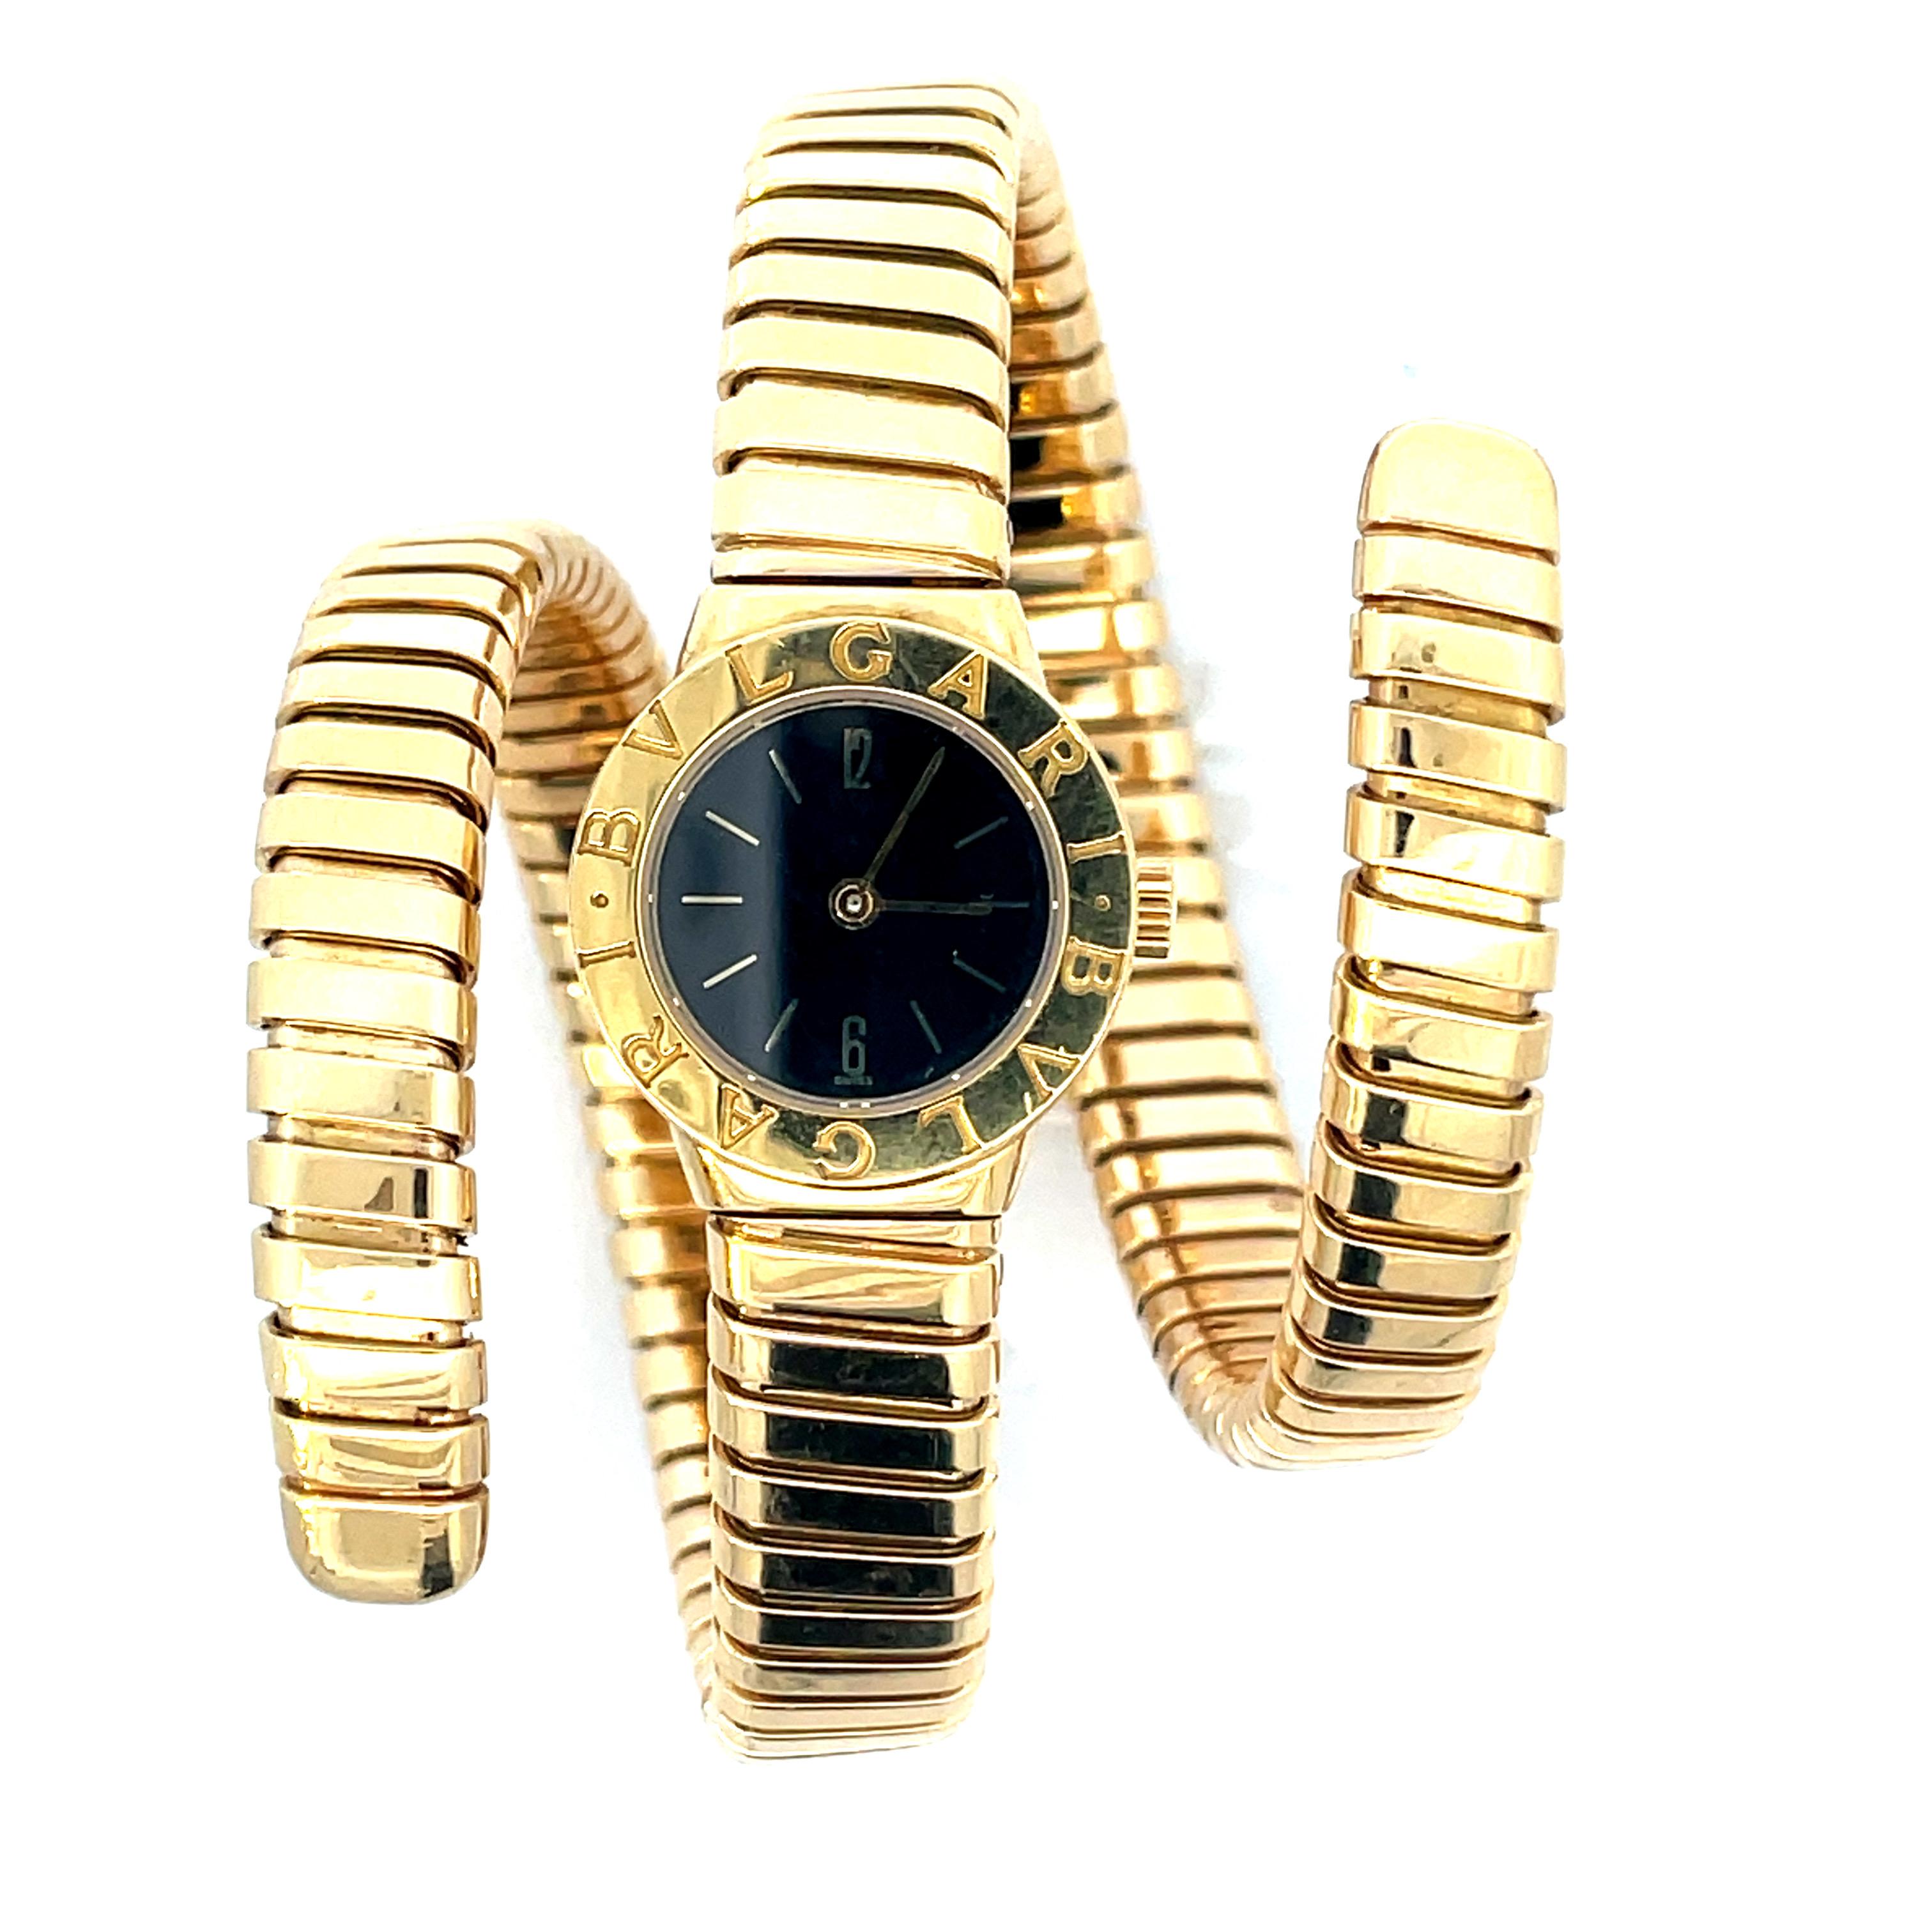 Bulgari Tubogas Damenuhr mit Schlangenarmband aus 18-karätigem Gelbgold mit einem außergewöhnlichen und seltenen zentralen Uhrwerk. Diese  Die Uhr mit Automatikwerk hat einen runden Kopf und ein schwarzes Zifferblatt. Eine ikonische Uhr, die Sie für